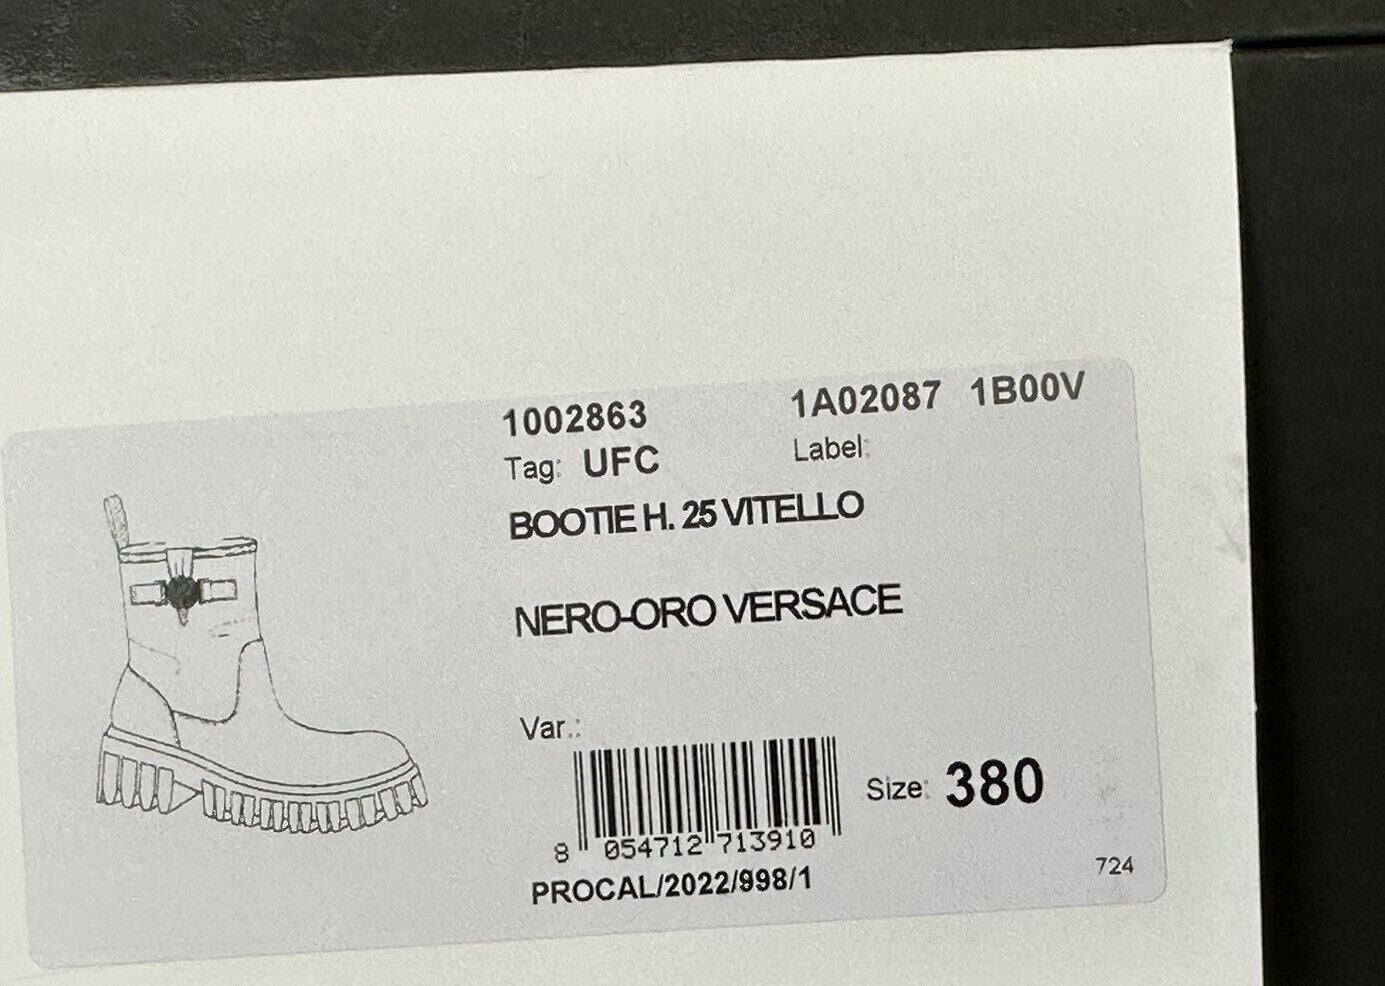 NIB 1300 долларов США Versace Leather Черные кожаные ботильоны 8 США (38 евро) 1002863 Испания 